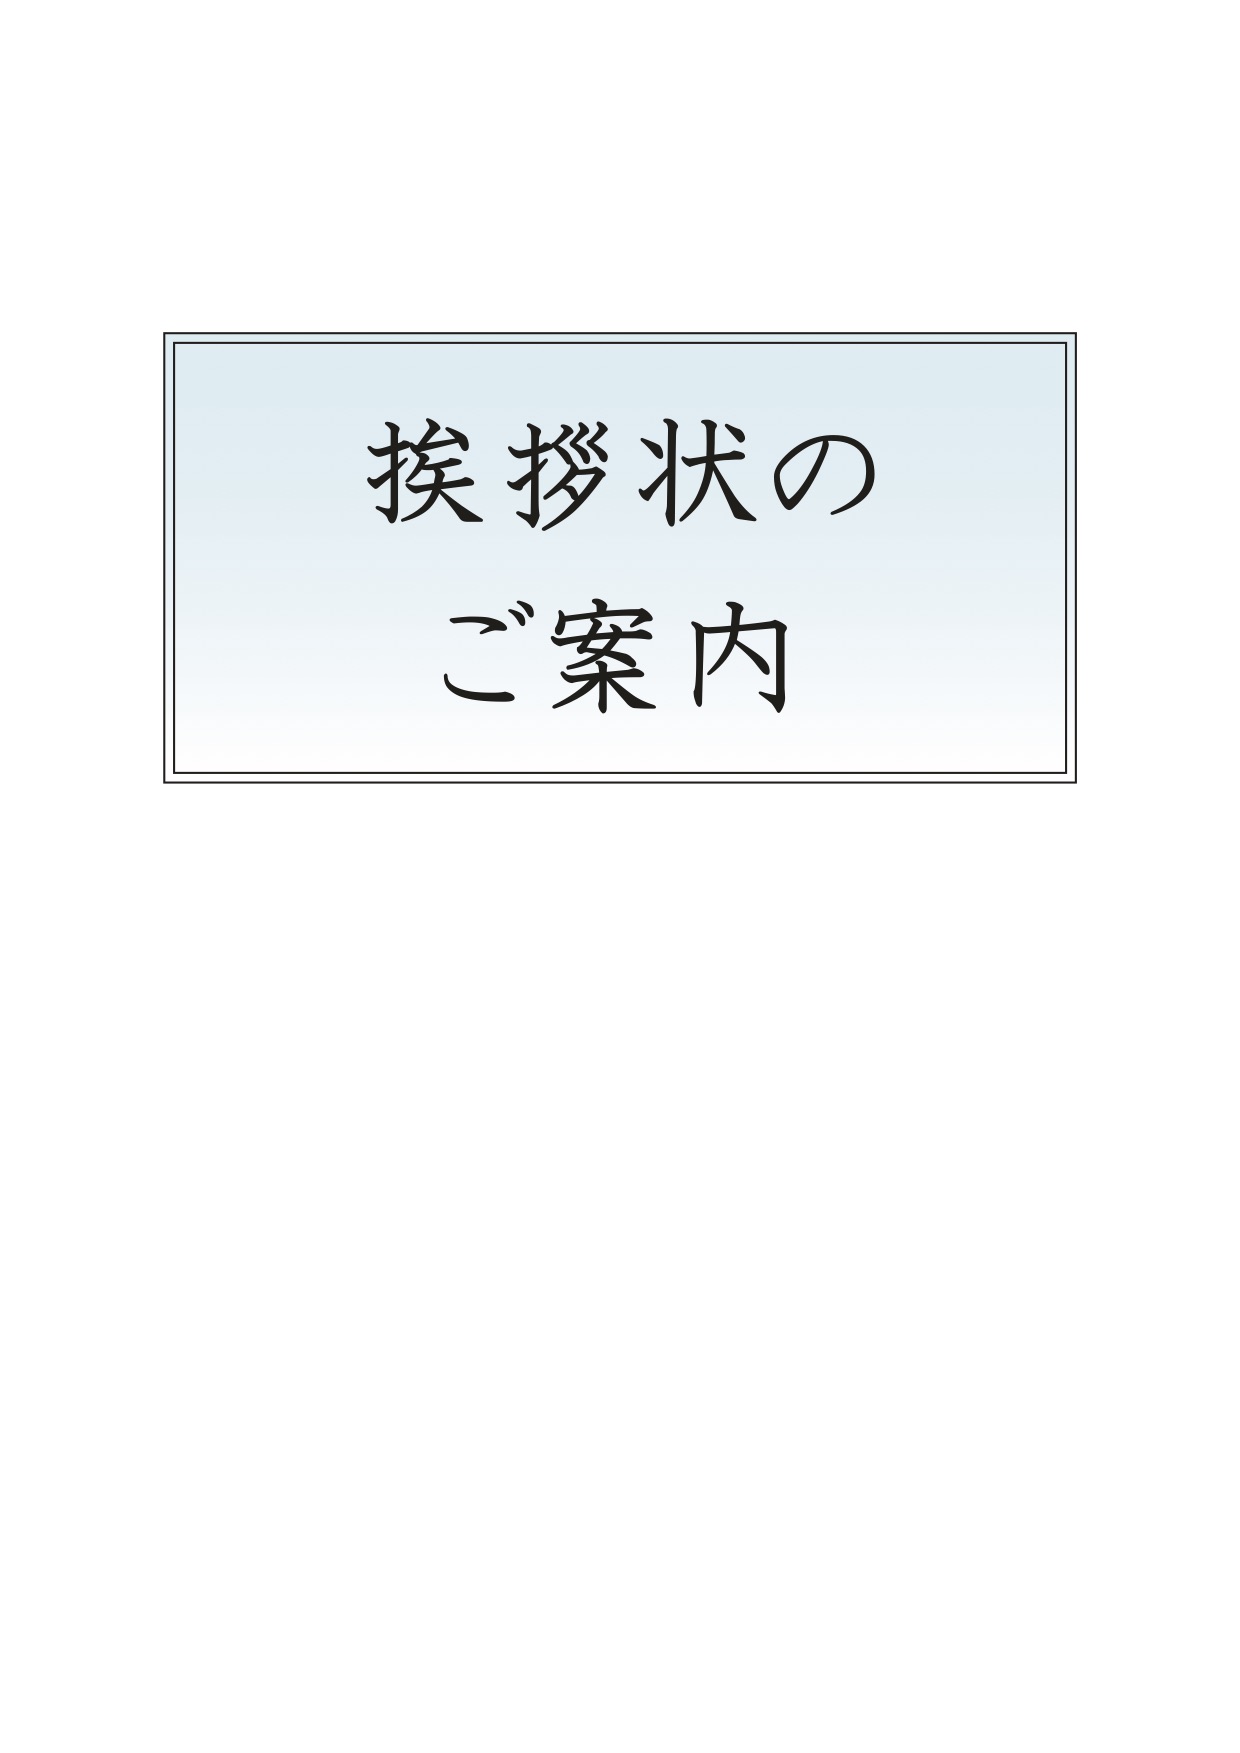 ご法要 納骨のご案内 秋川霊園 公式ホームページ